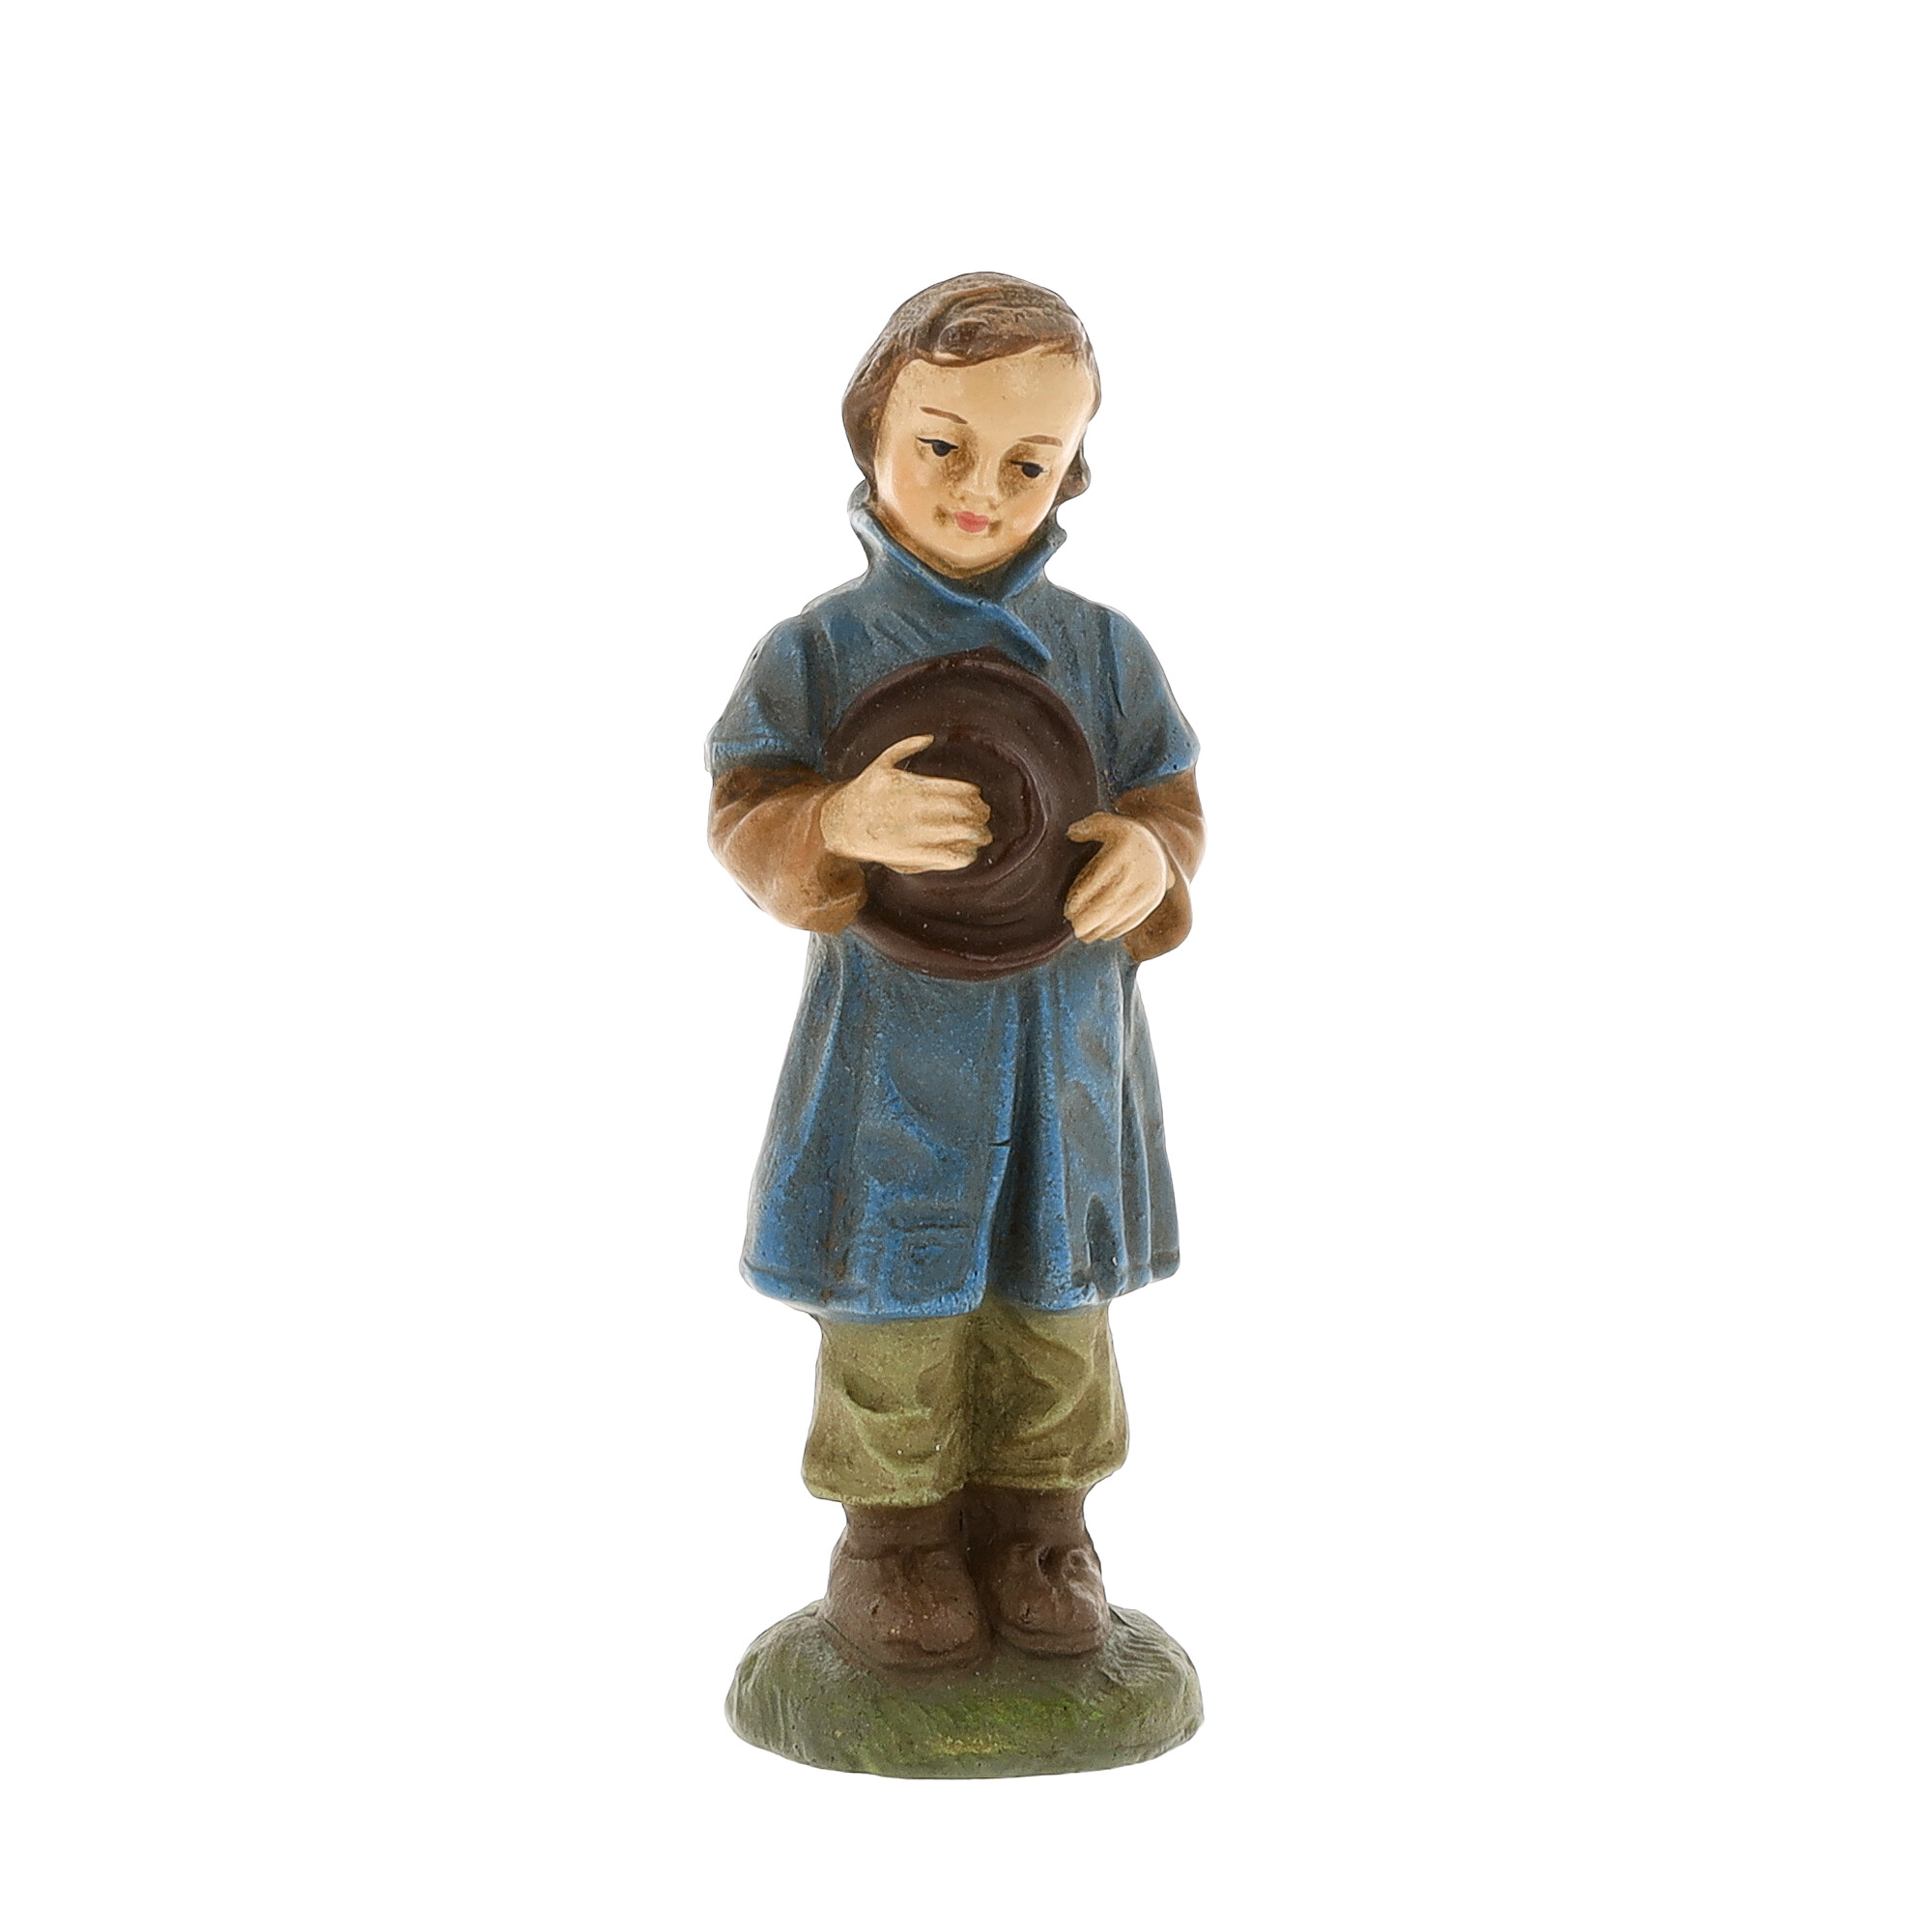 Shepherd boy with hat - MAROLIN Nativity figure